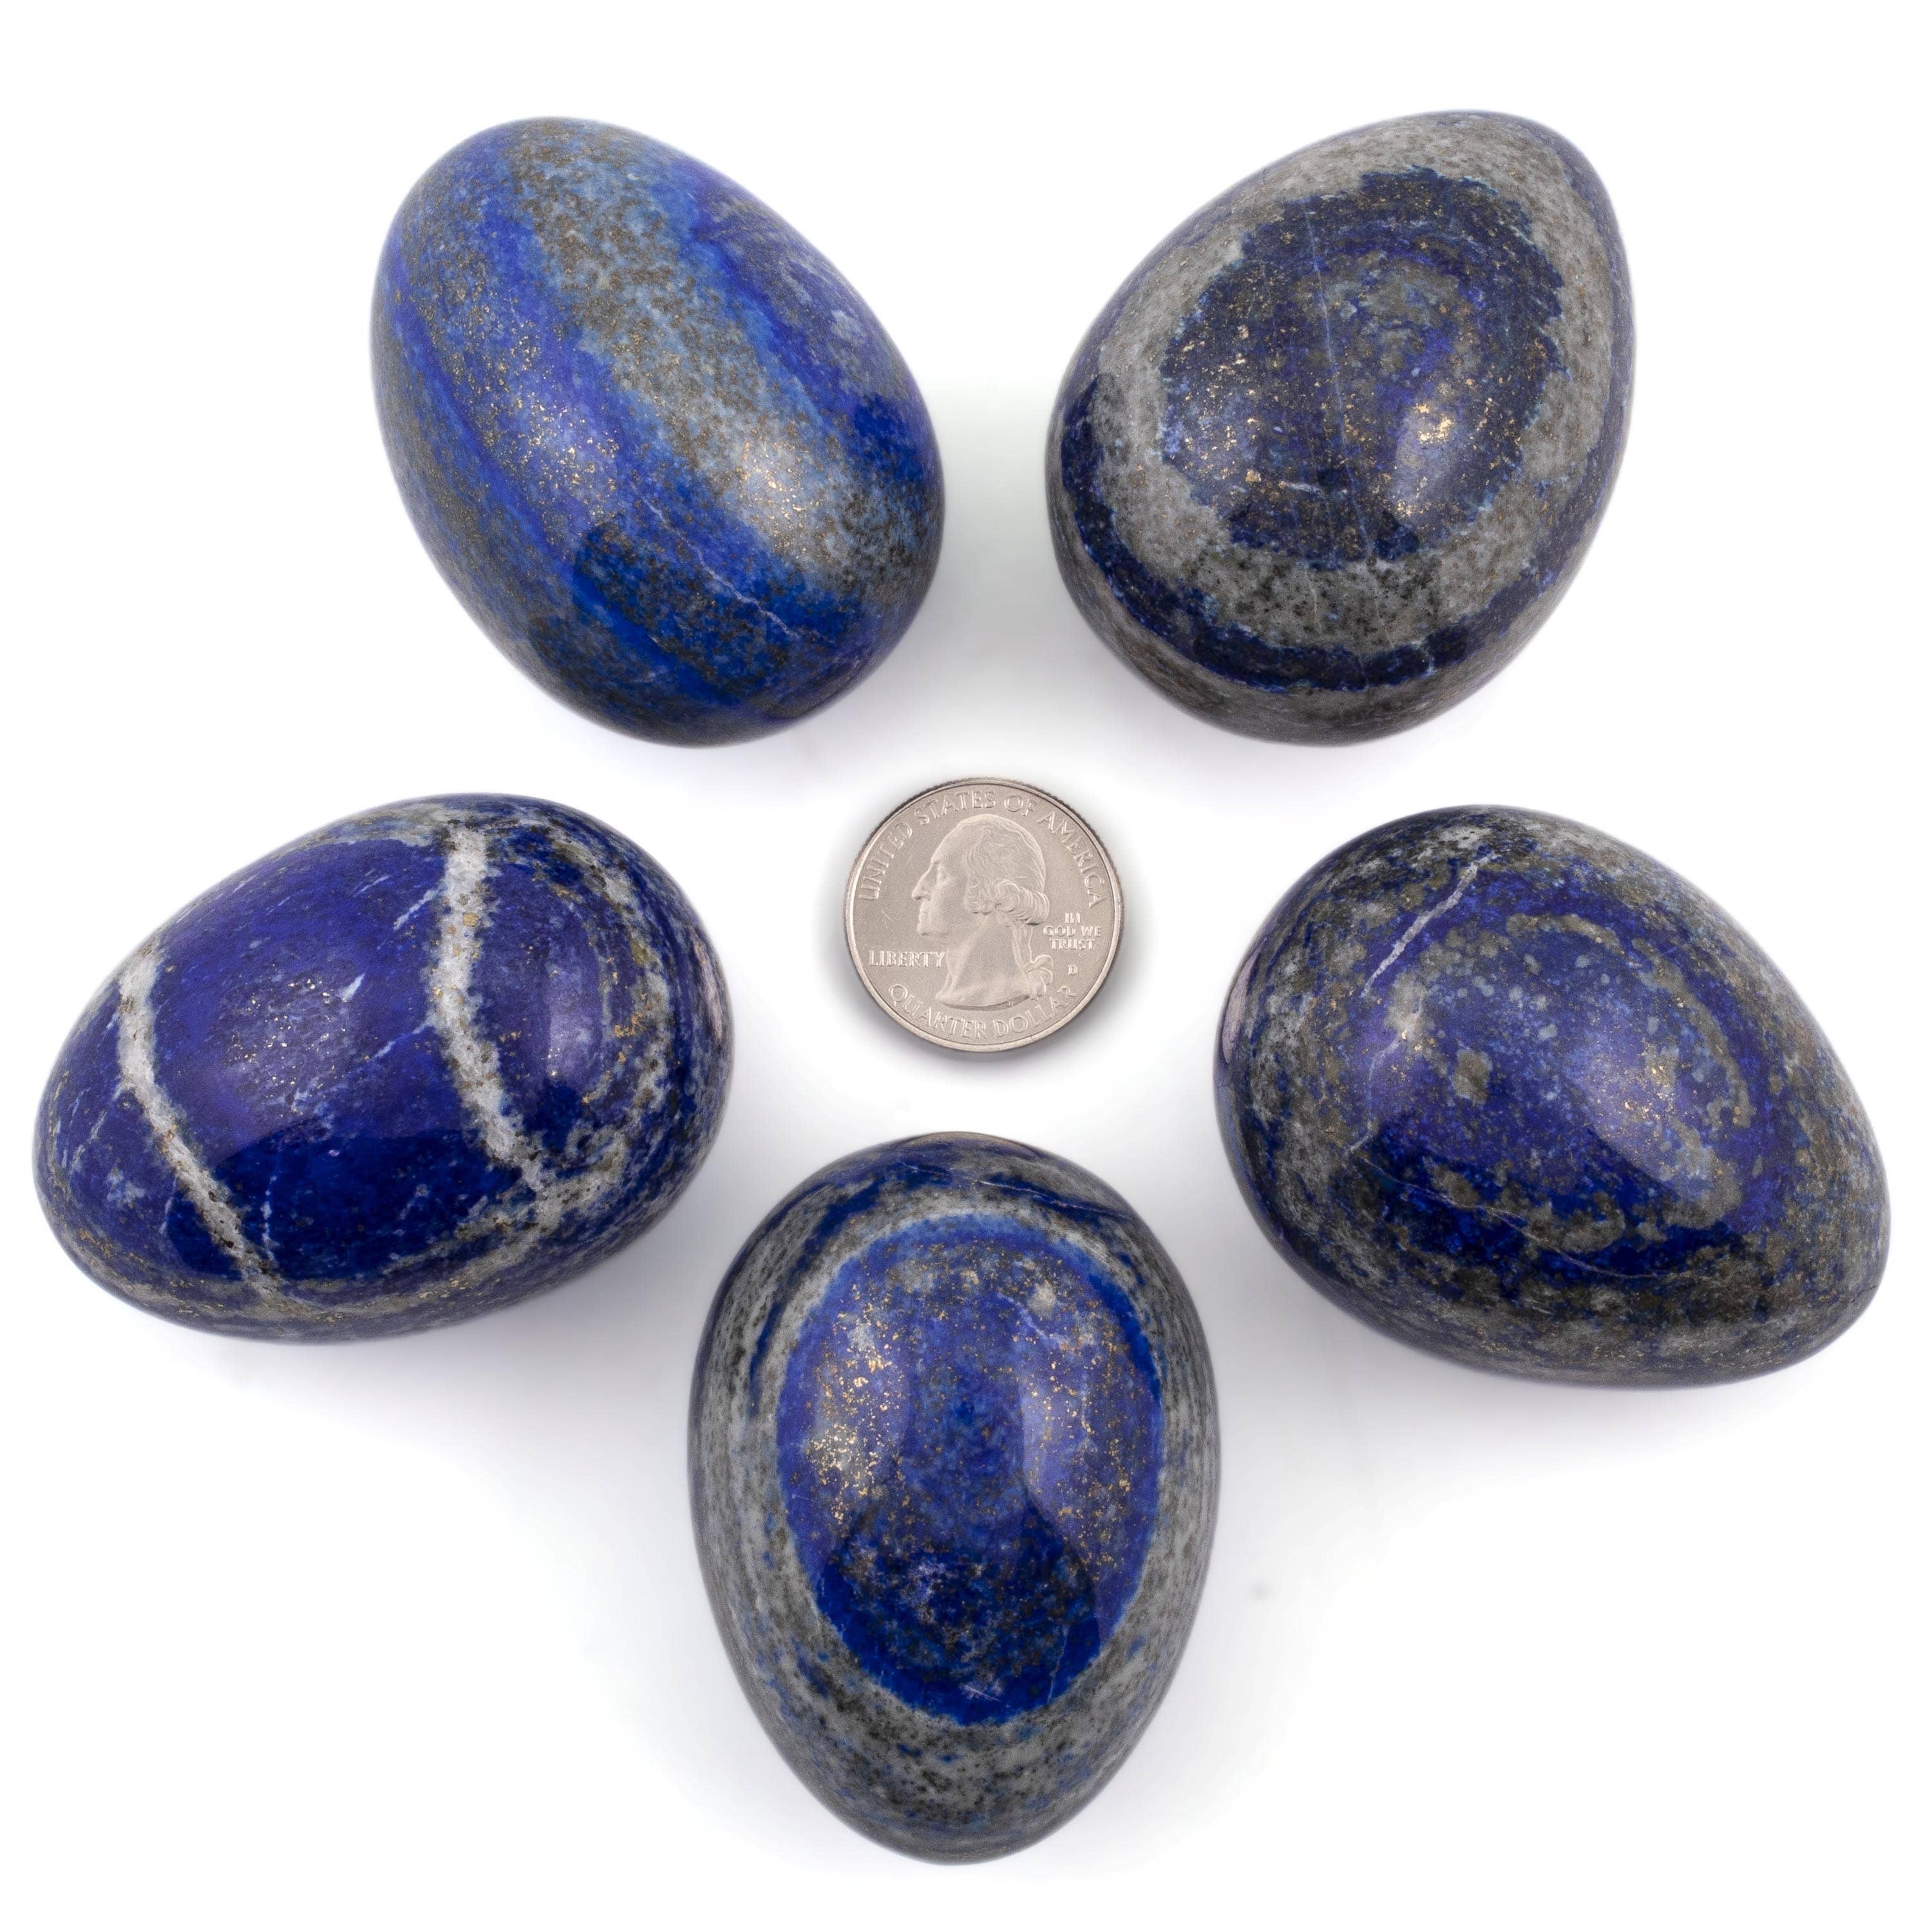 Kalifano Lapis Lapis Lazuli Egg Carving 1.75 in. / 175 grams LPE200